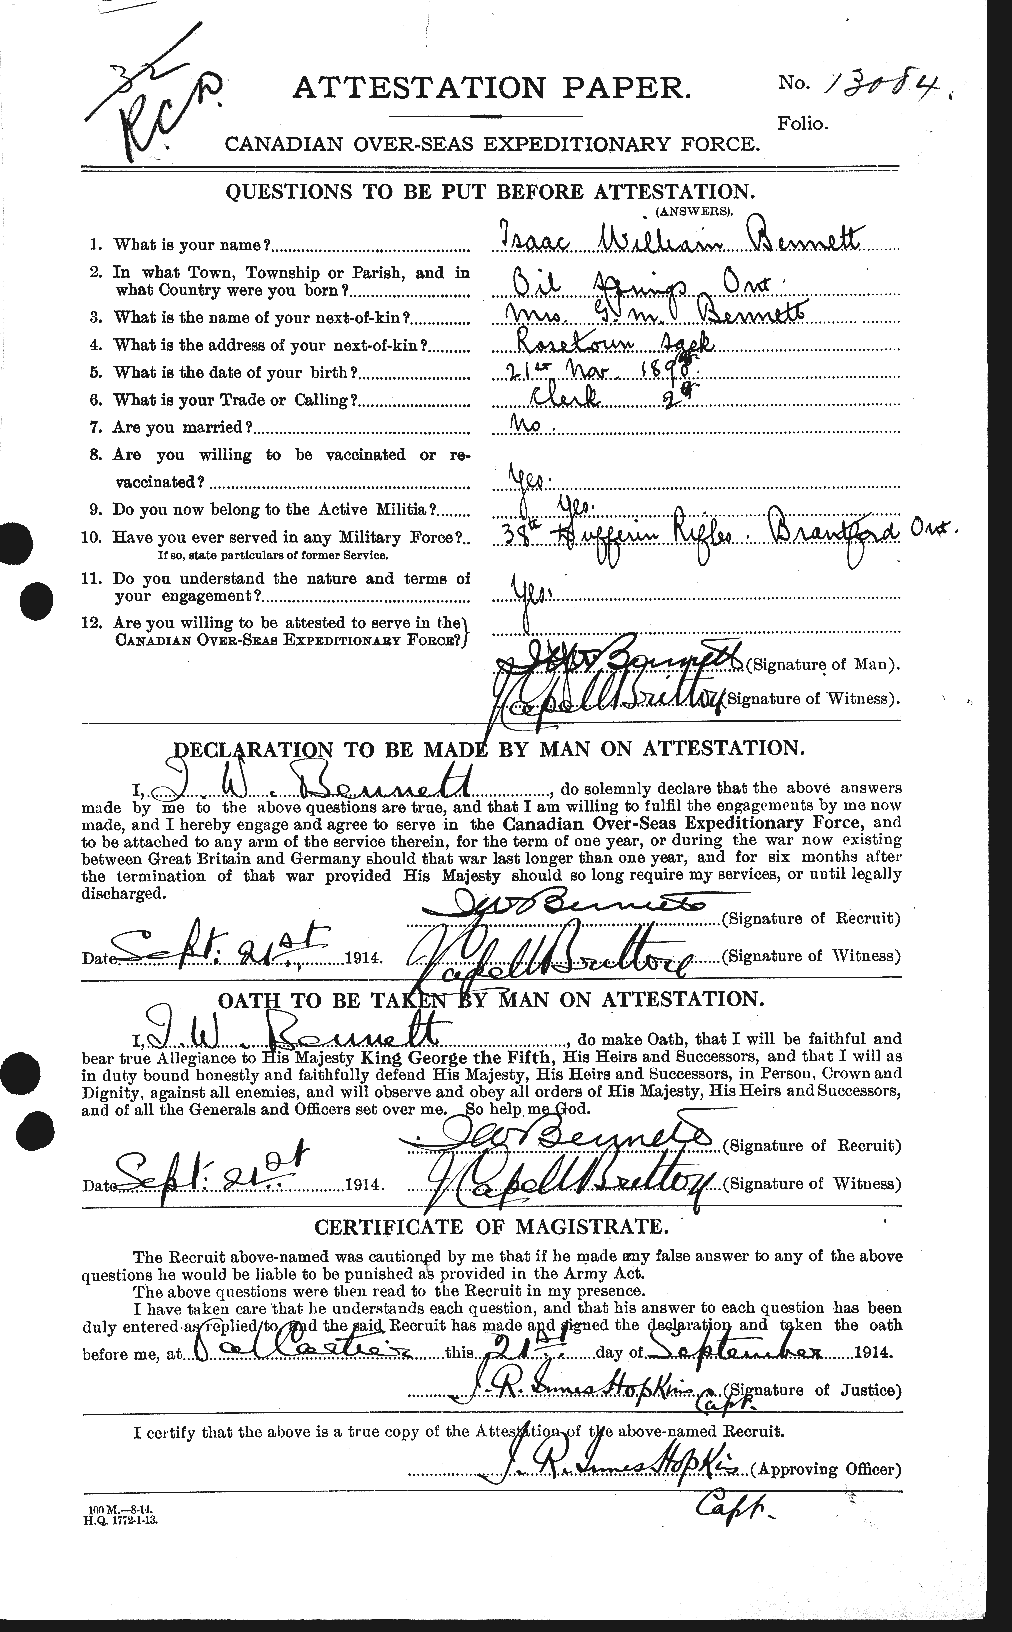 Dossiers du Personnel de la Première Guerre mondiale - CEC 238519a